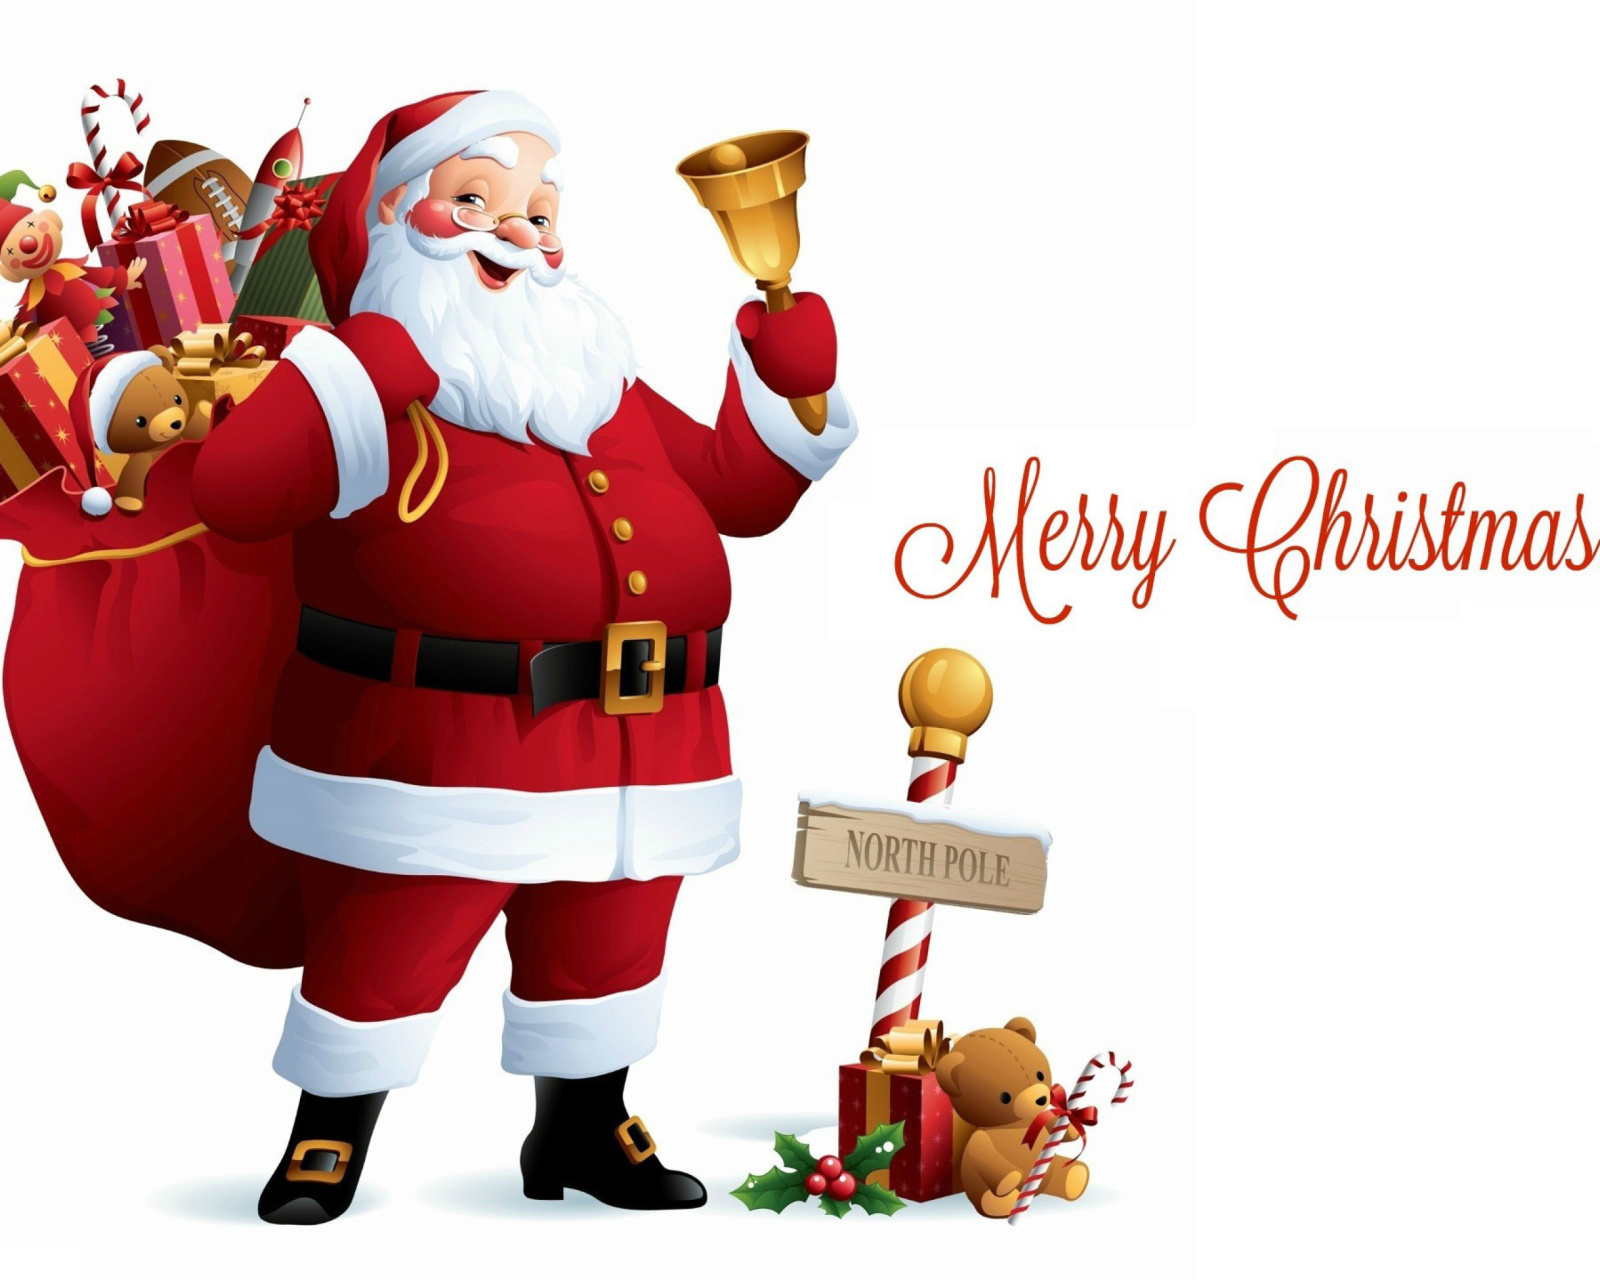 HO HO HO Merry Christmas Santa Claus screenshot #1 1600x1280